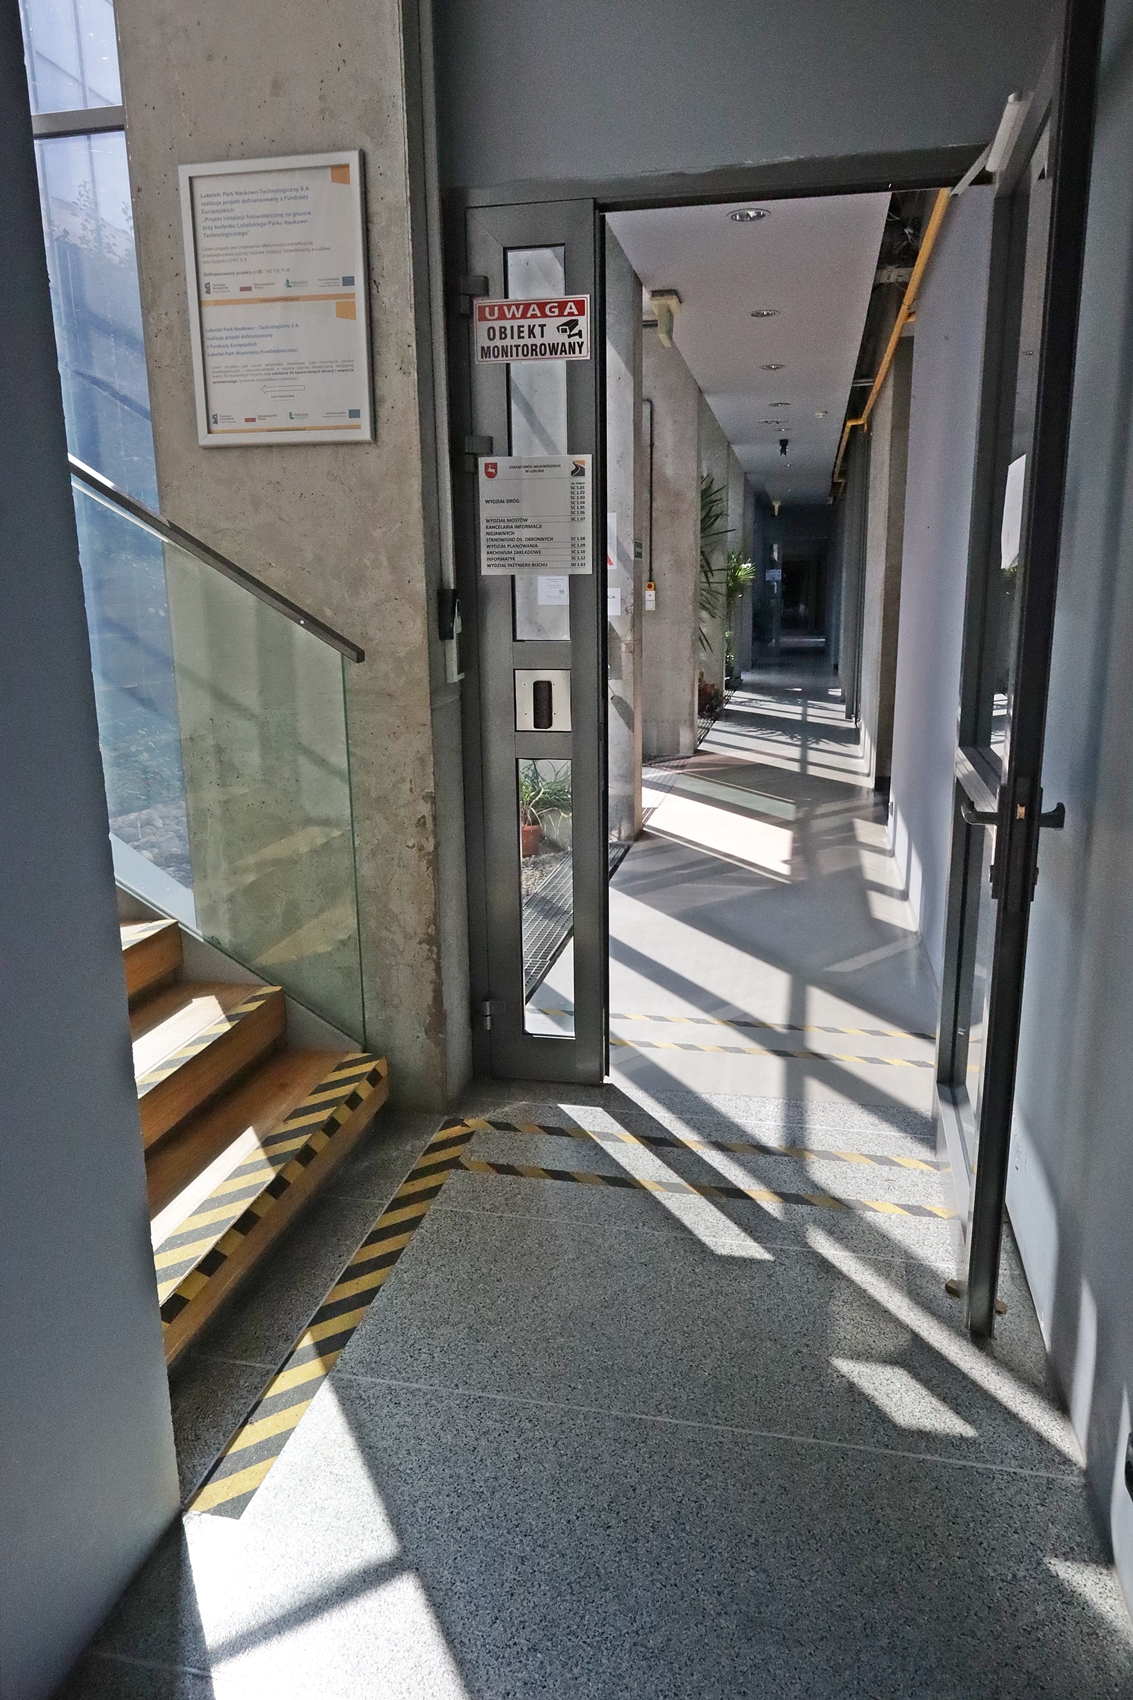 Na zdjęciu widzimy na dojście do schodów w budynku Zarządu Dróg Wojewódzkich w Lublinie oraz przejście z głównego hallu na korytarz prowadzący do pokoi pracowniczych. Na podłodze żółto czarną taśmą wyklejone są pasy zarówno przed wejściem na schody jak i przed drzwiami wejściowymi na korytarz.